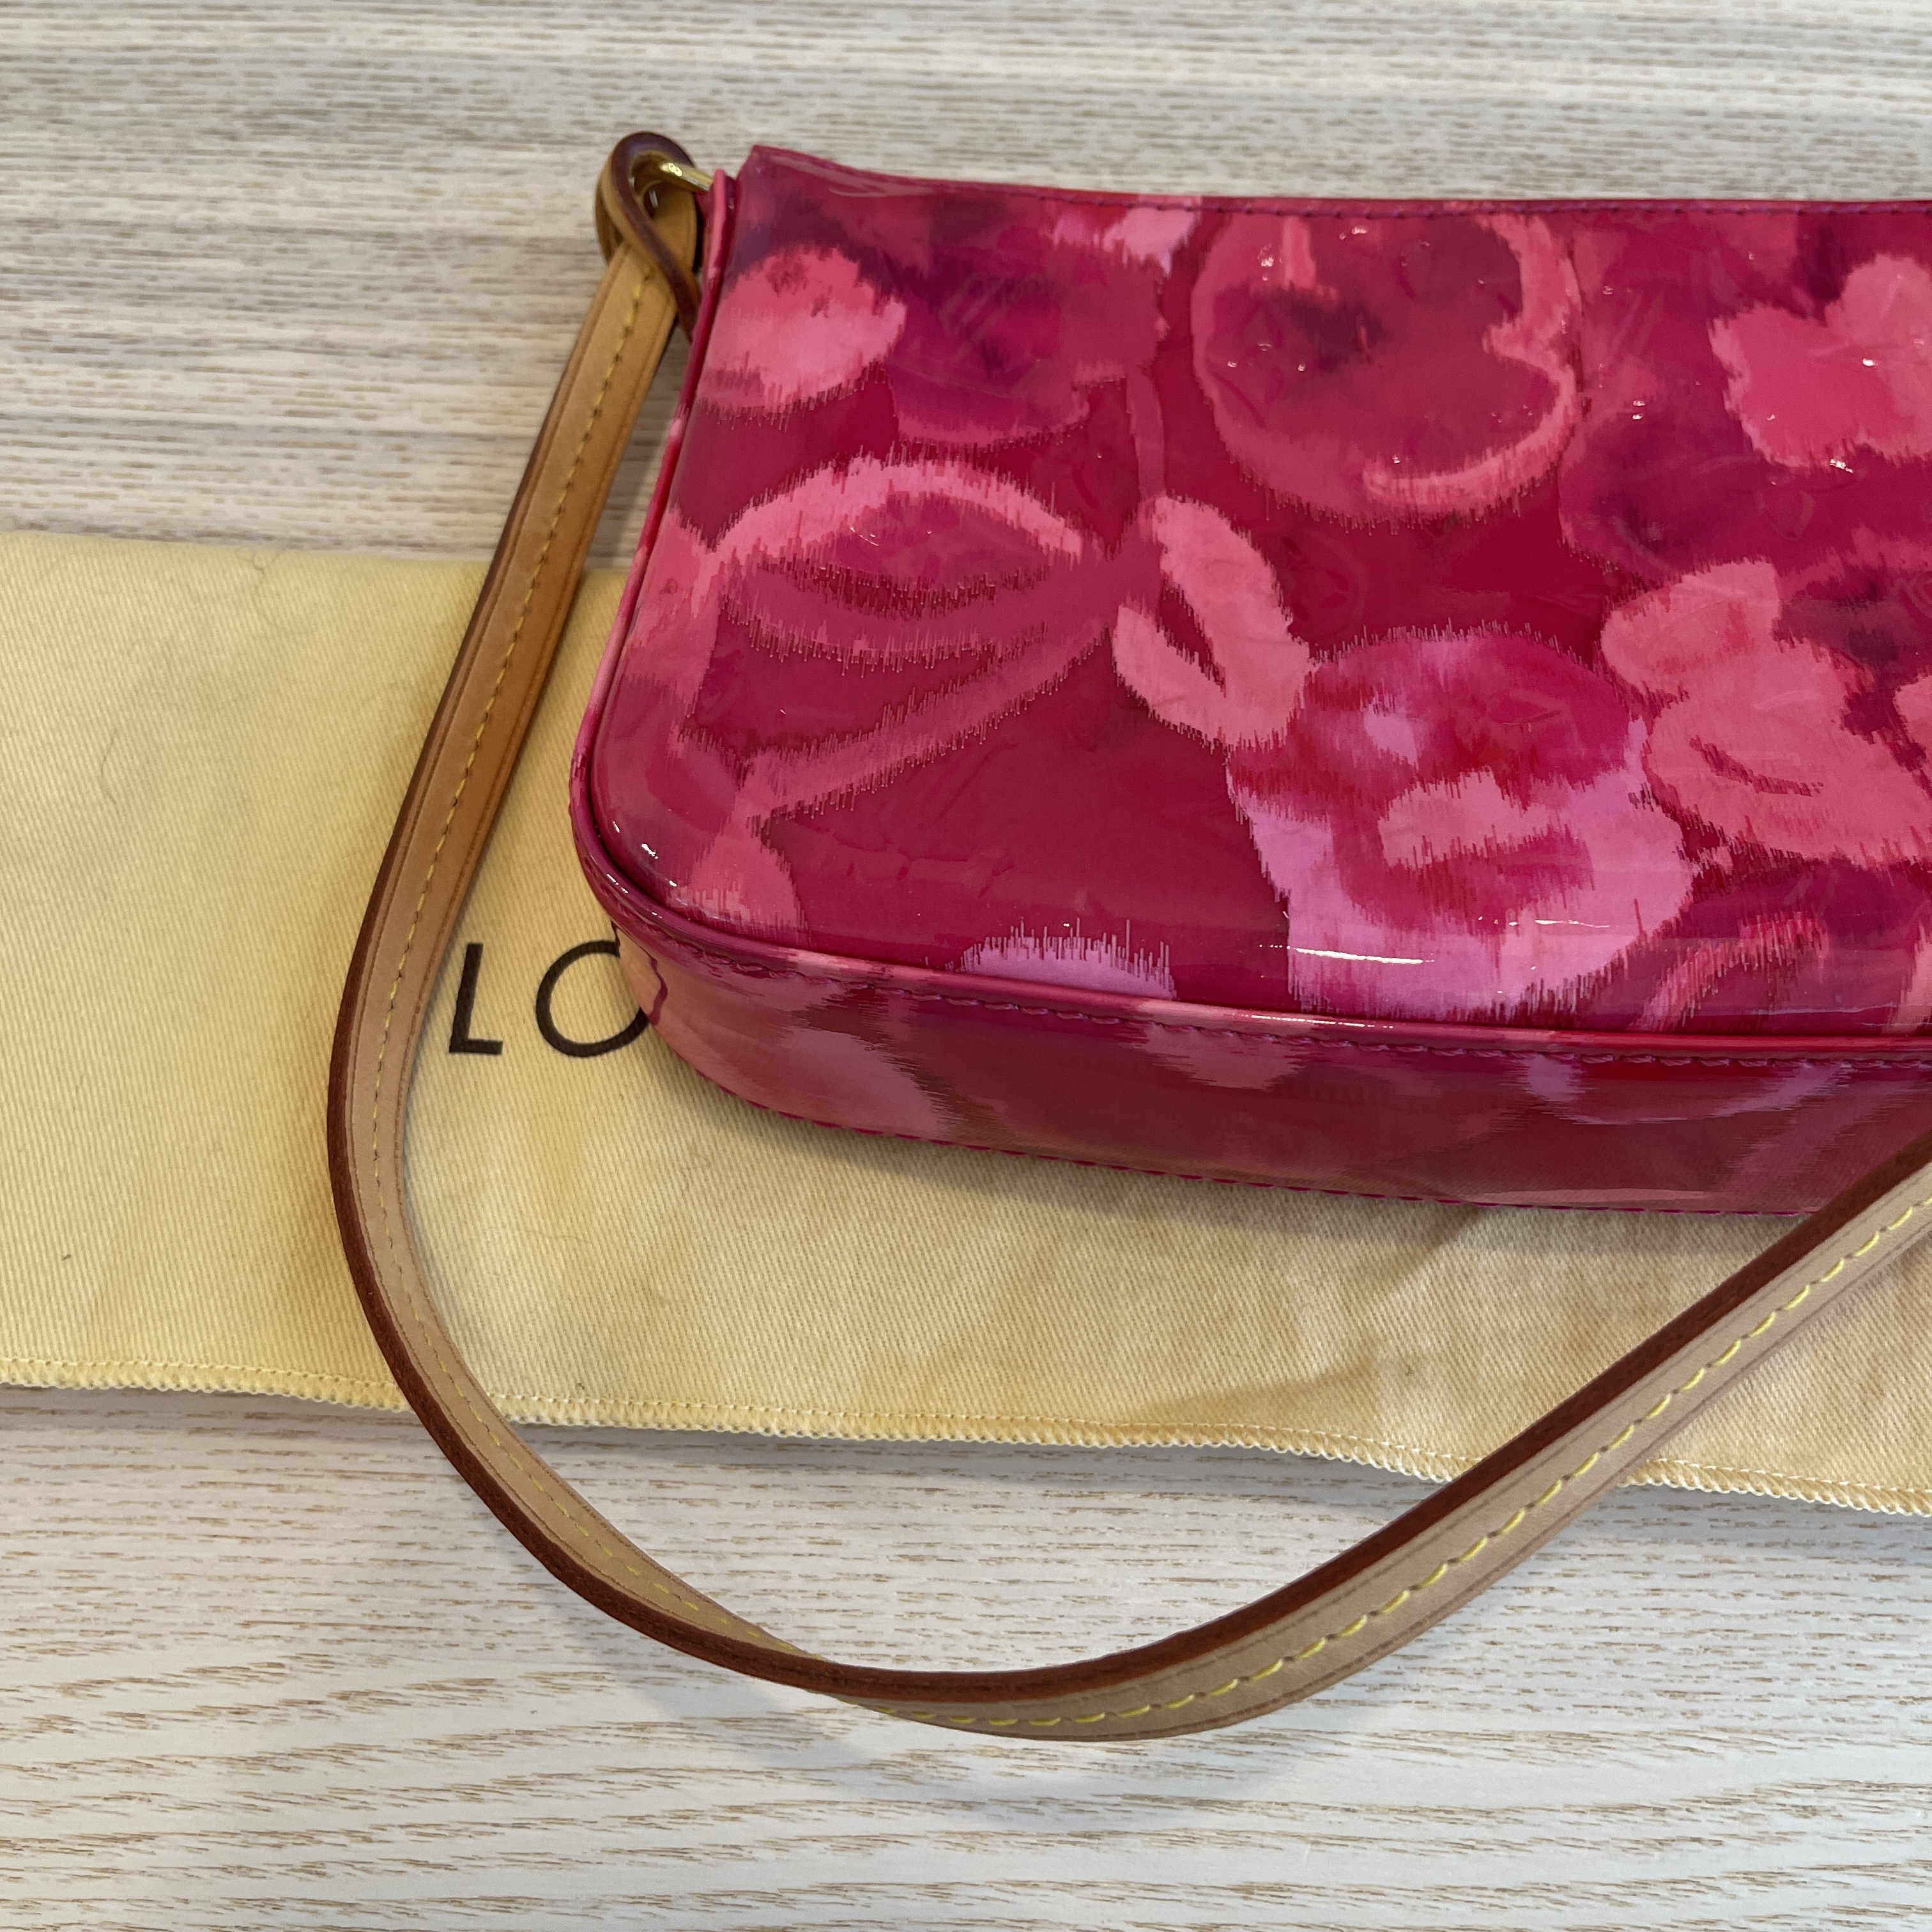 Louis Vuitton Monogram Rose Indien Vernis Ikat Cosmetic pouch Louis Vuitton